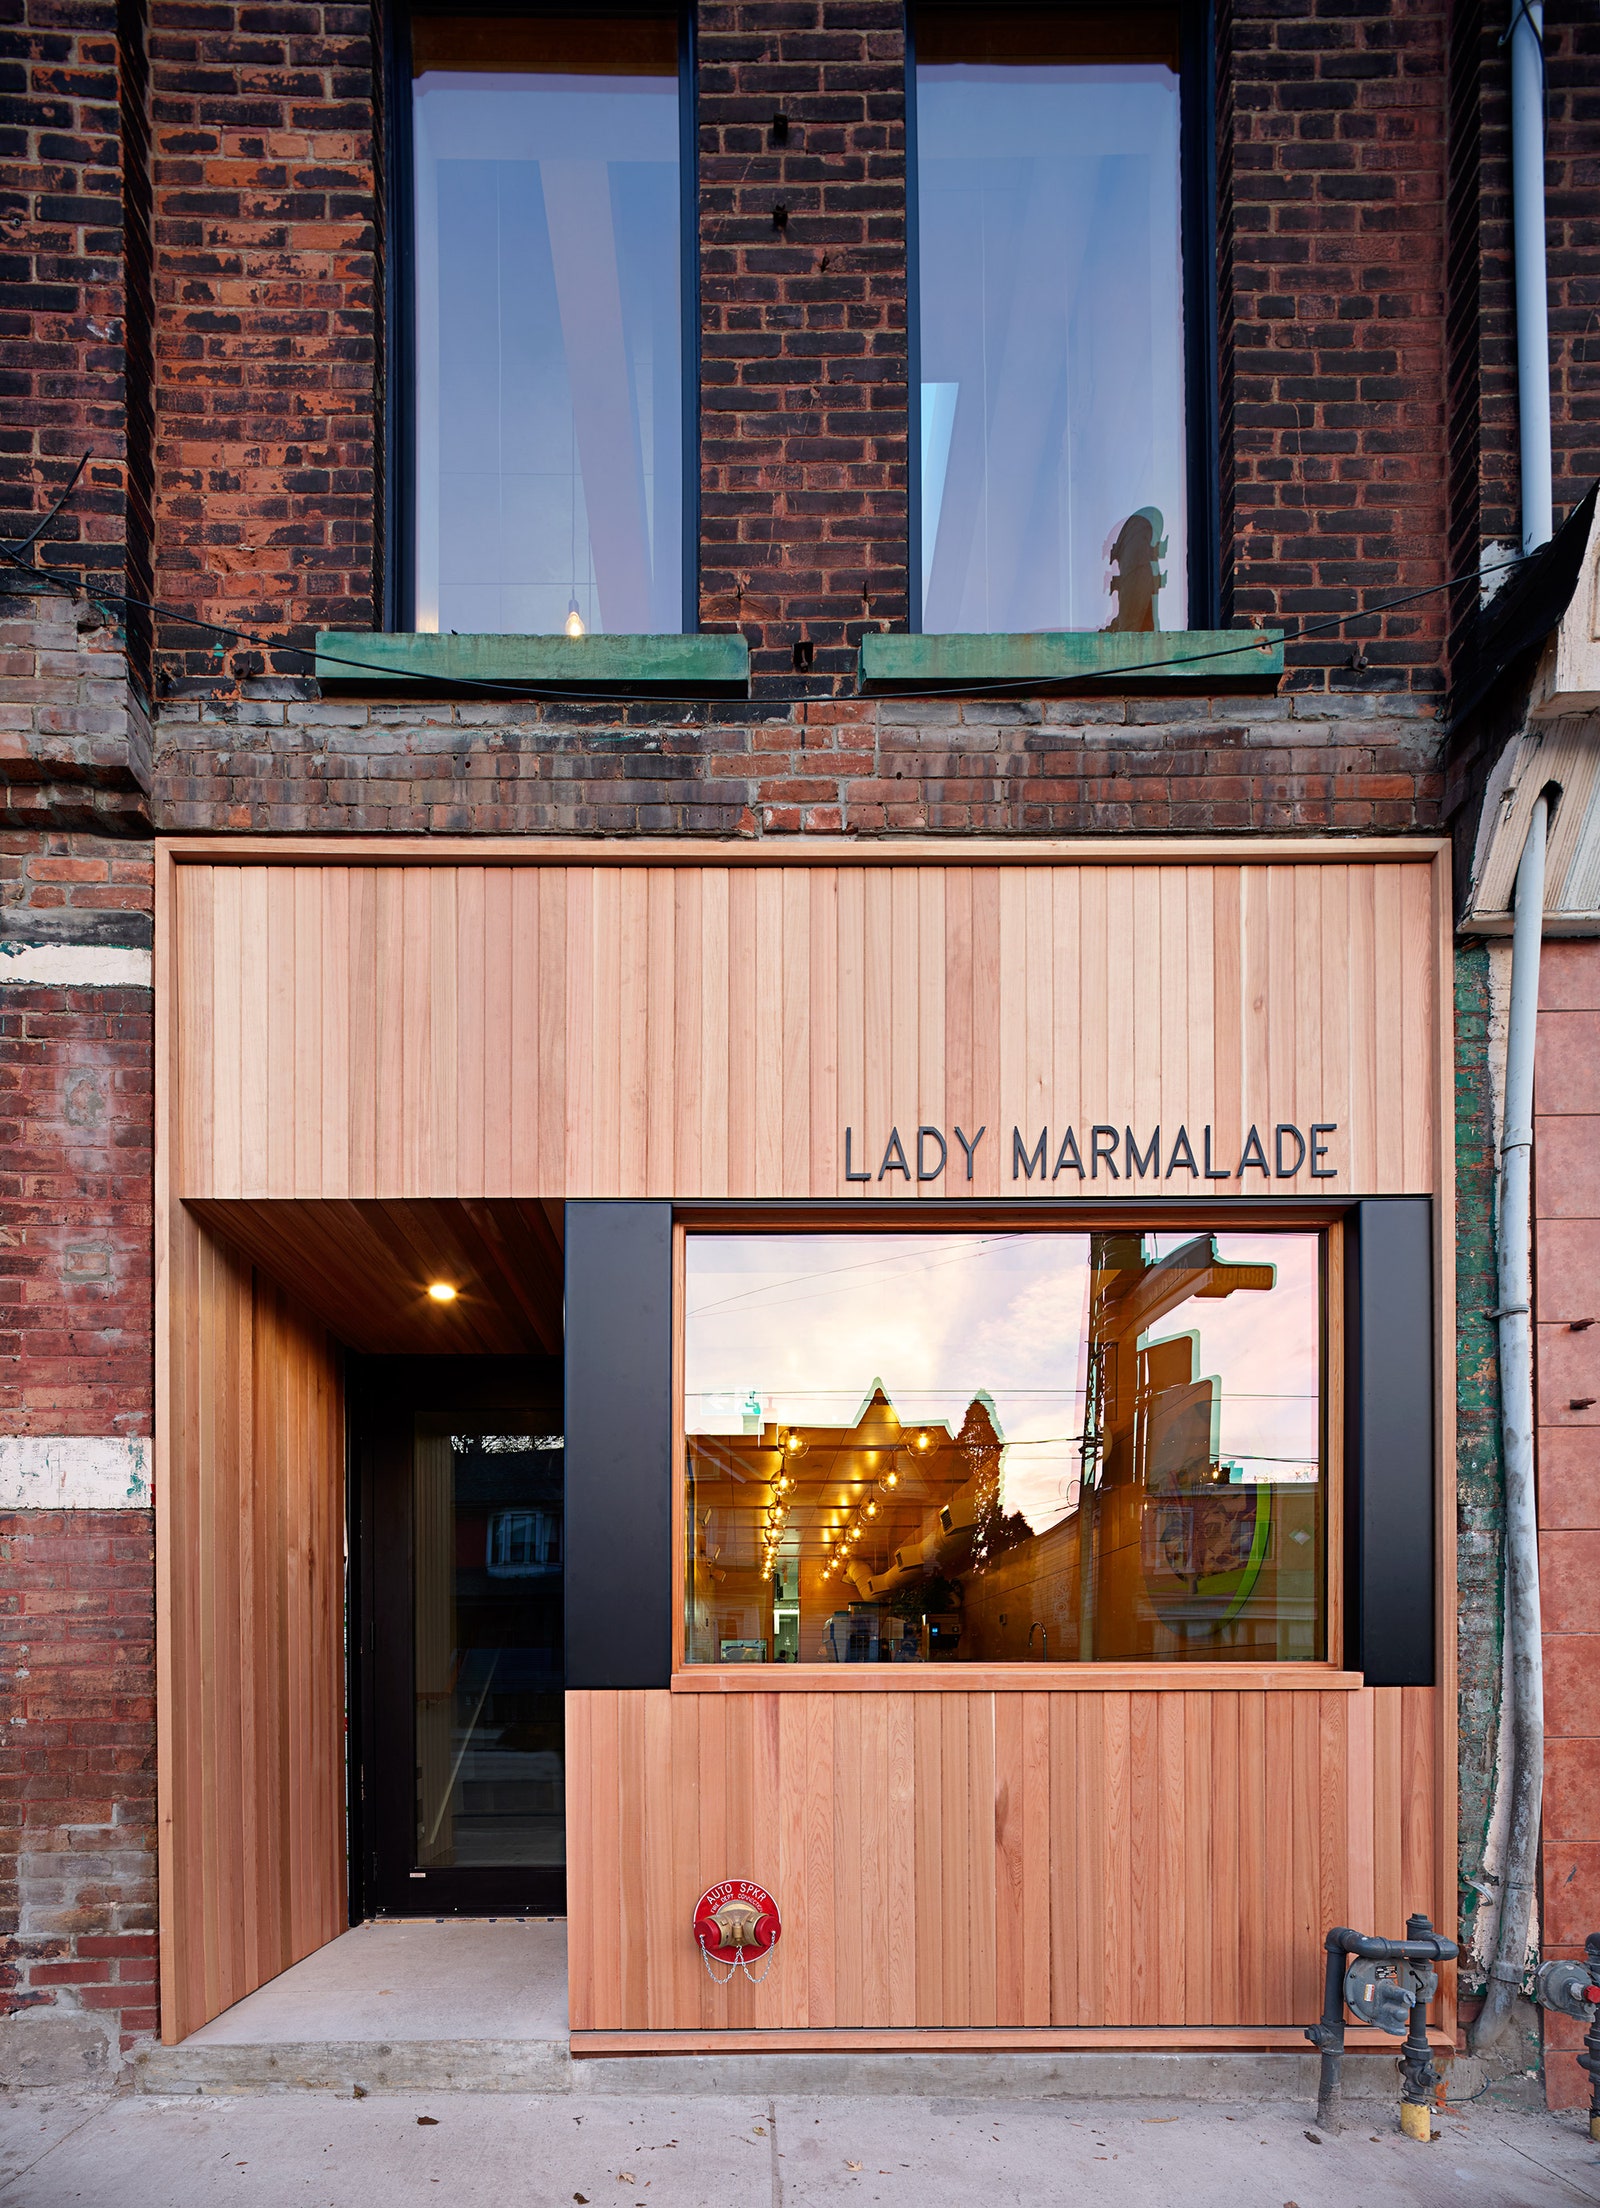 Обновленный интерьер ресторана Lady Marmalade в Торонто по проекту Омара Ганди